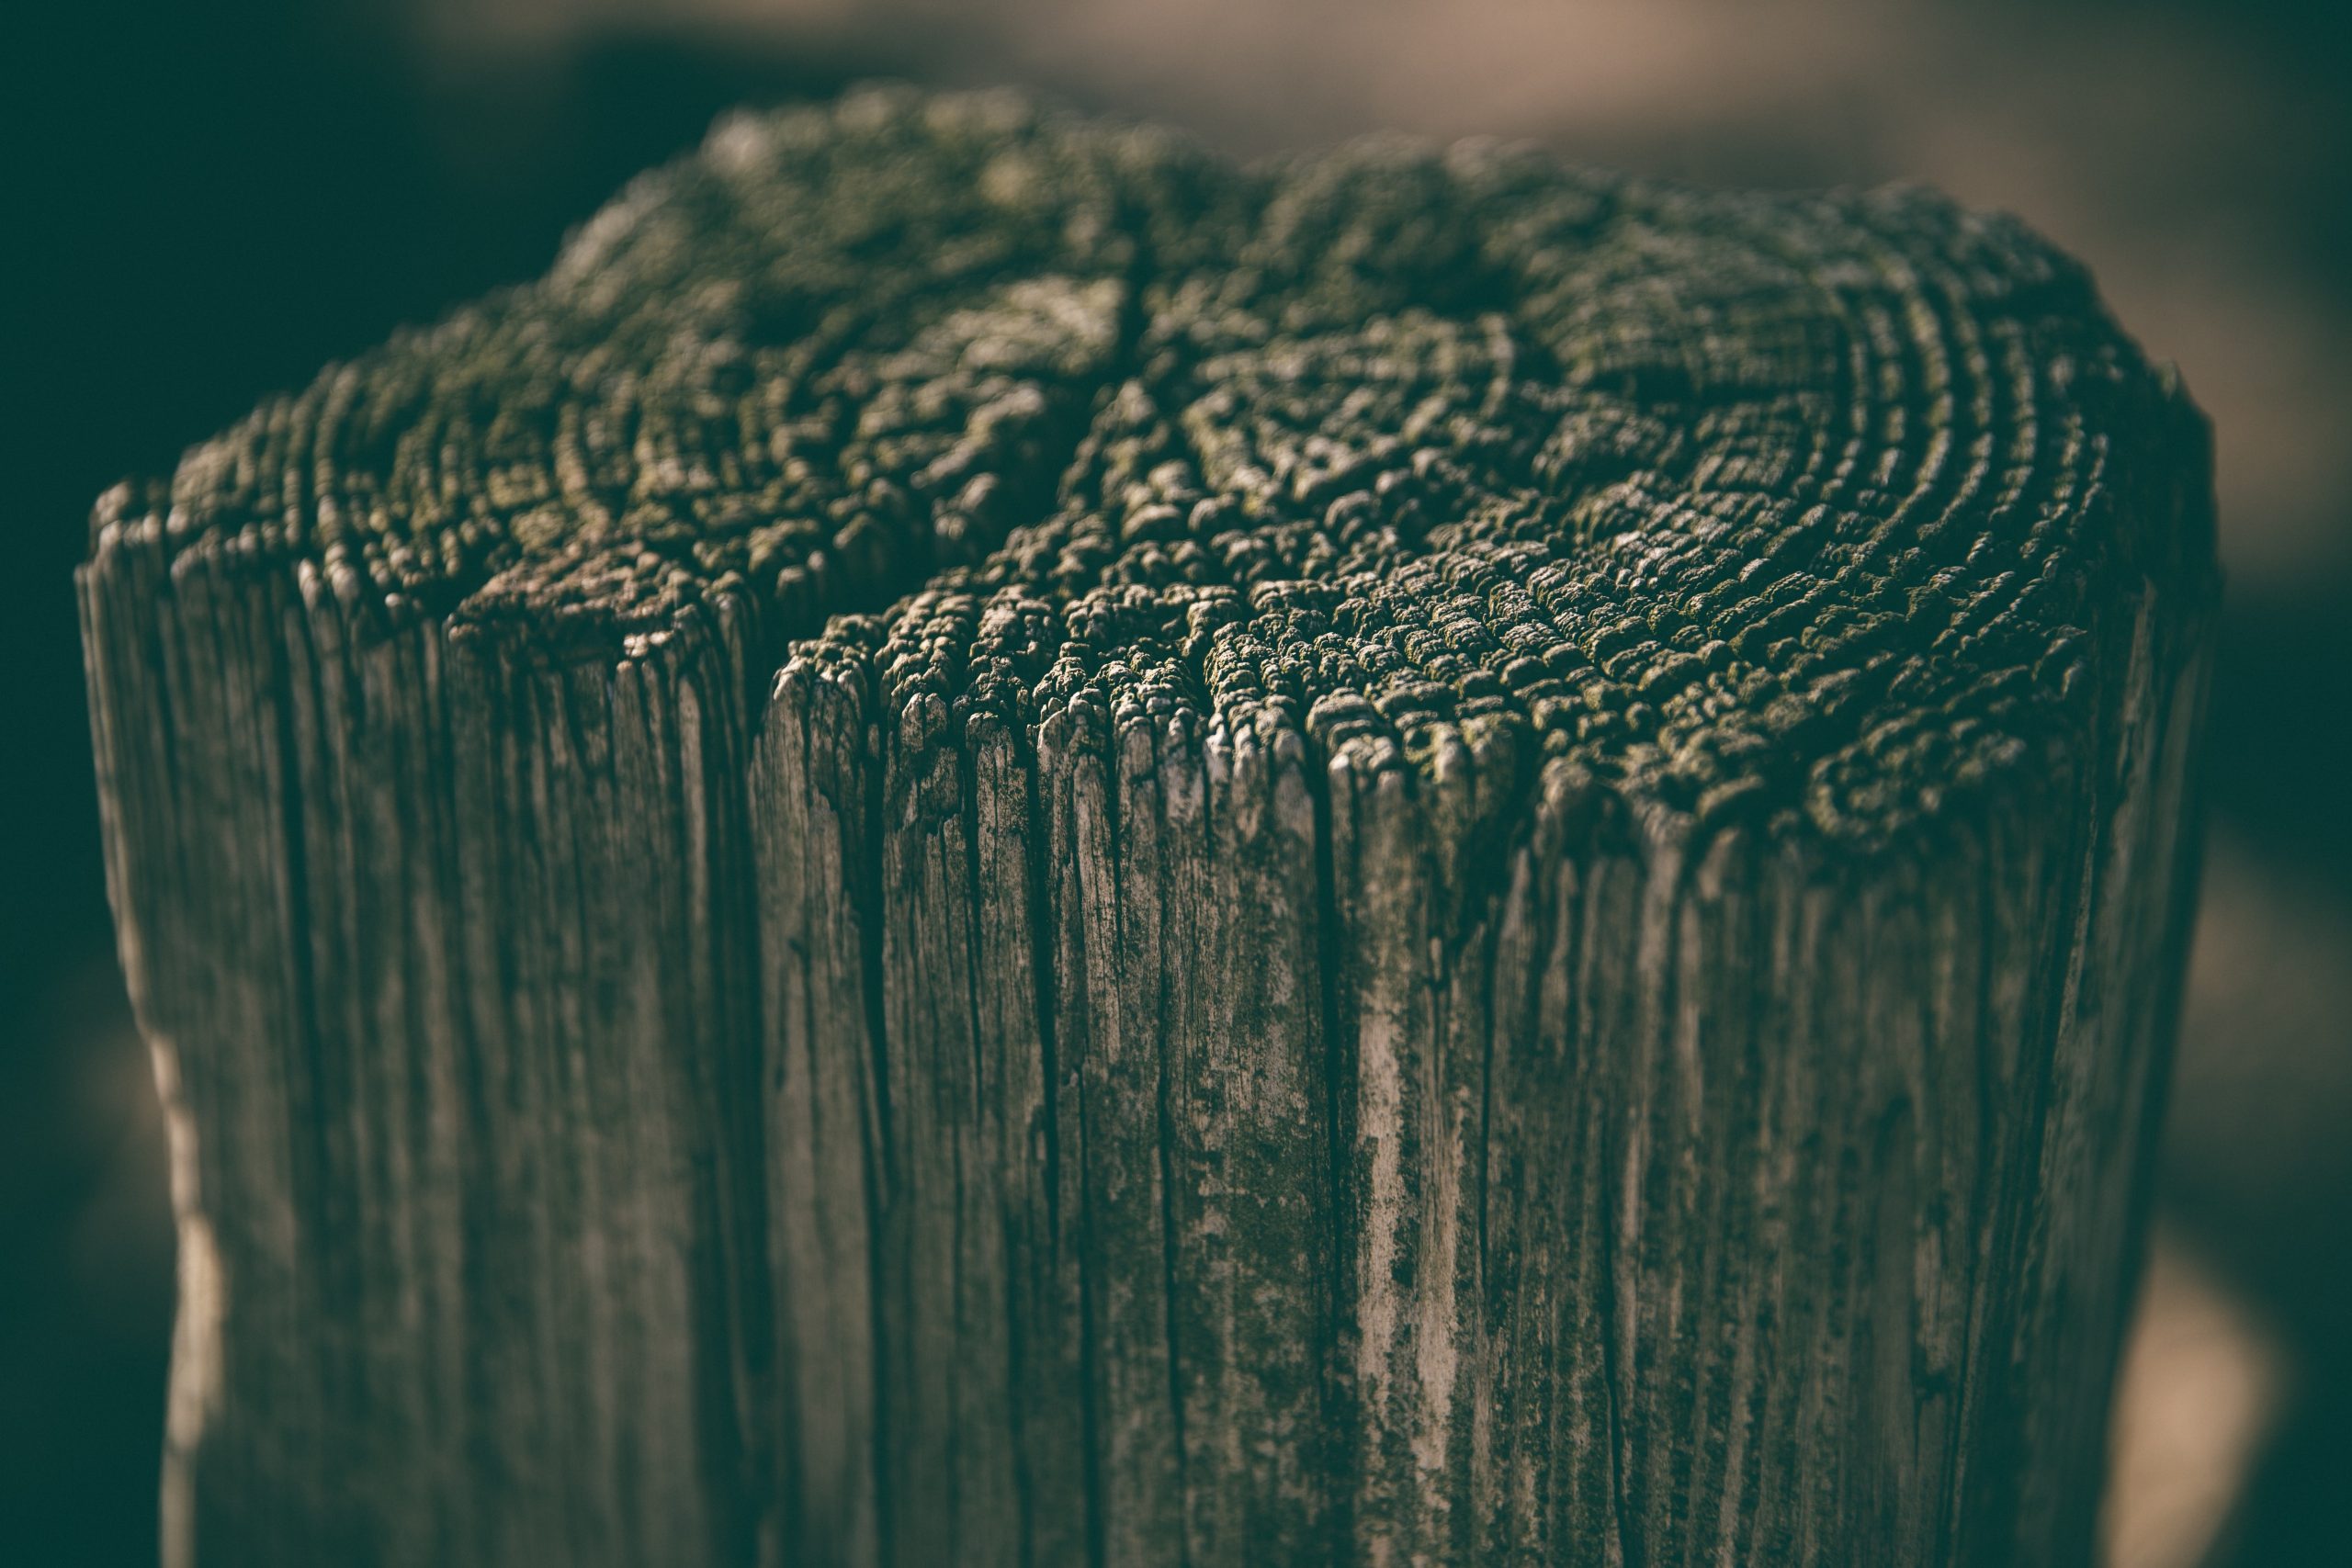 Wood-destroying fungus